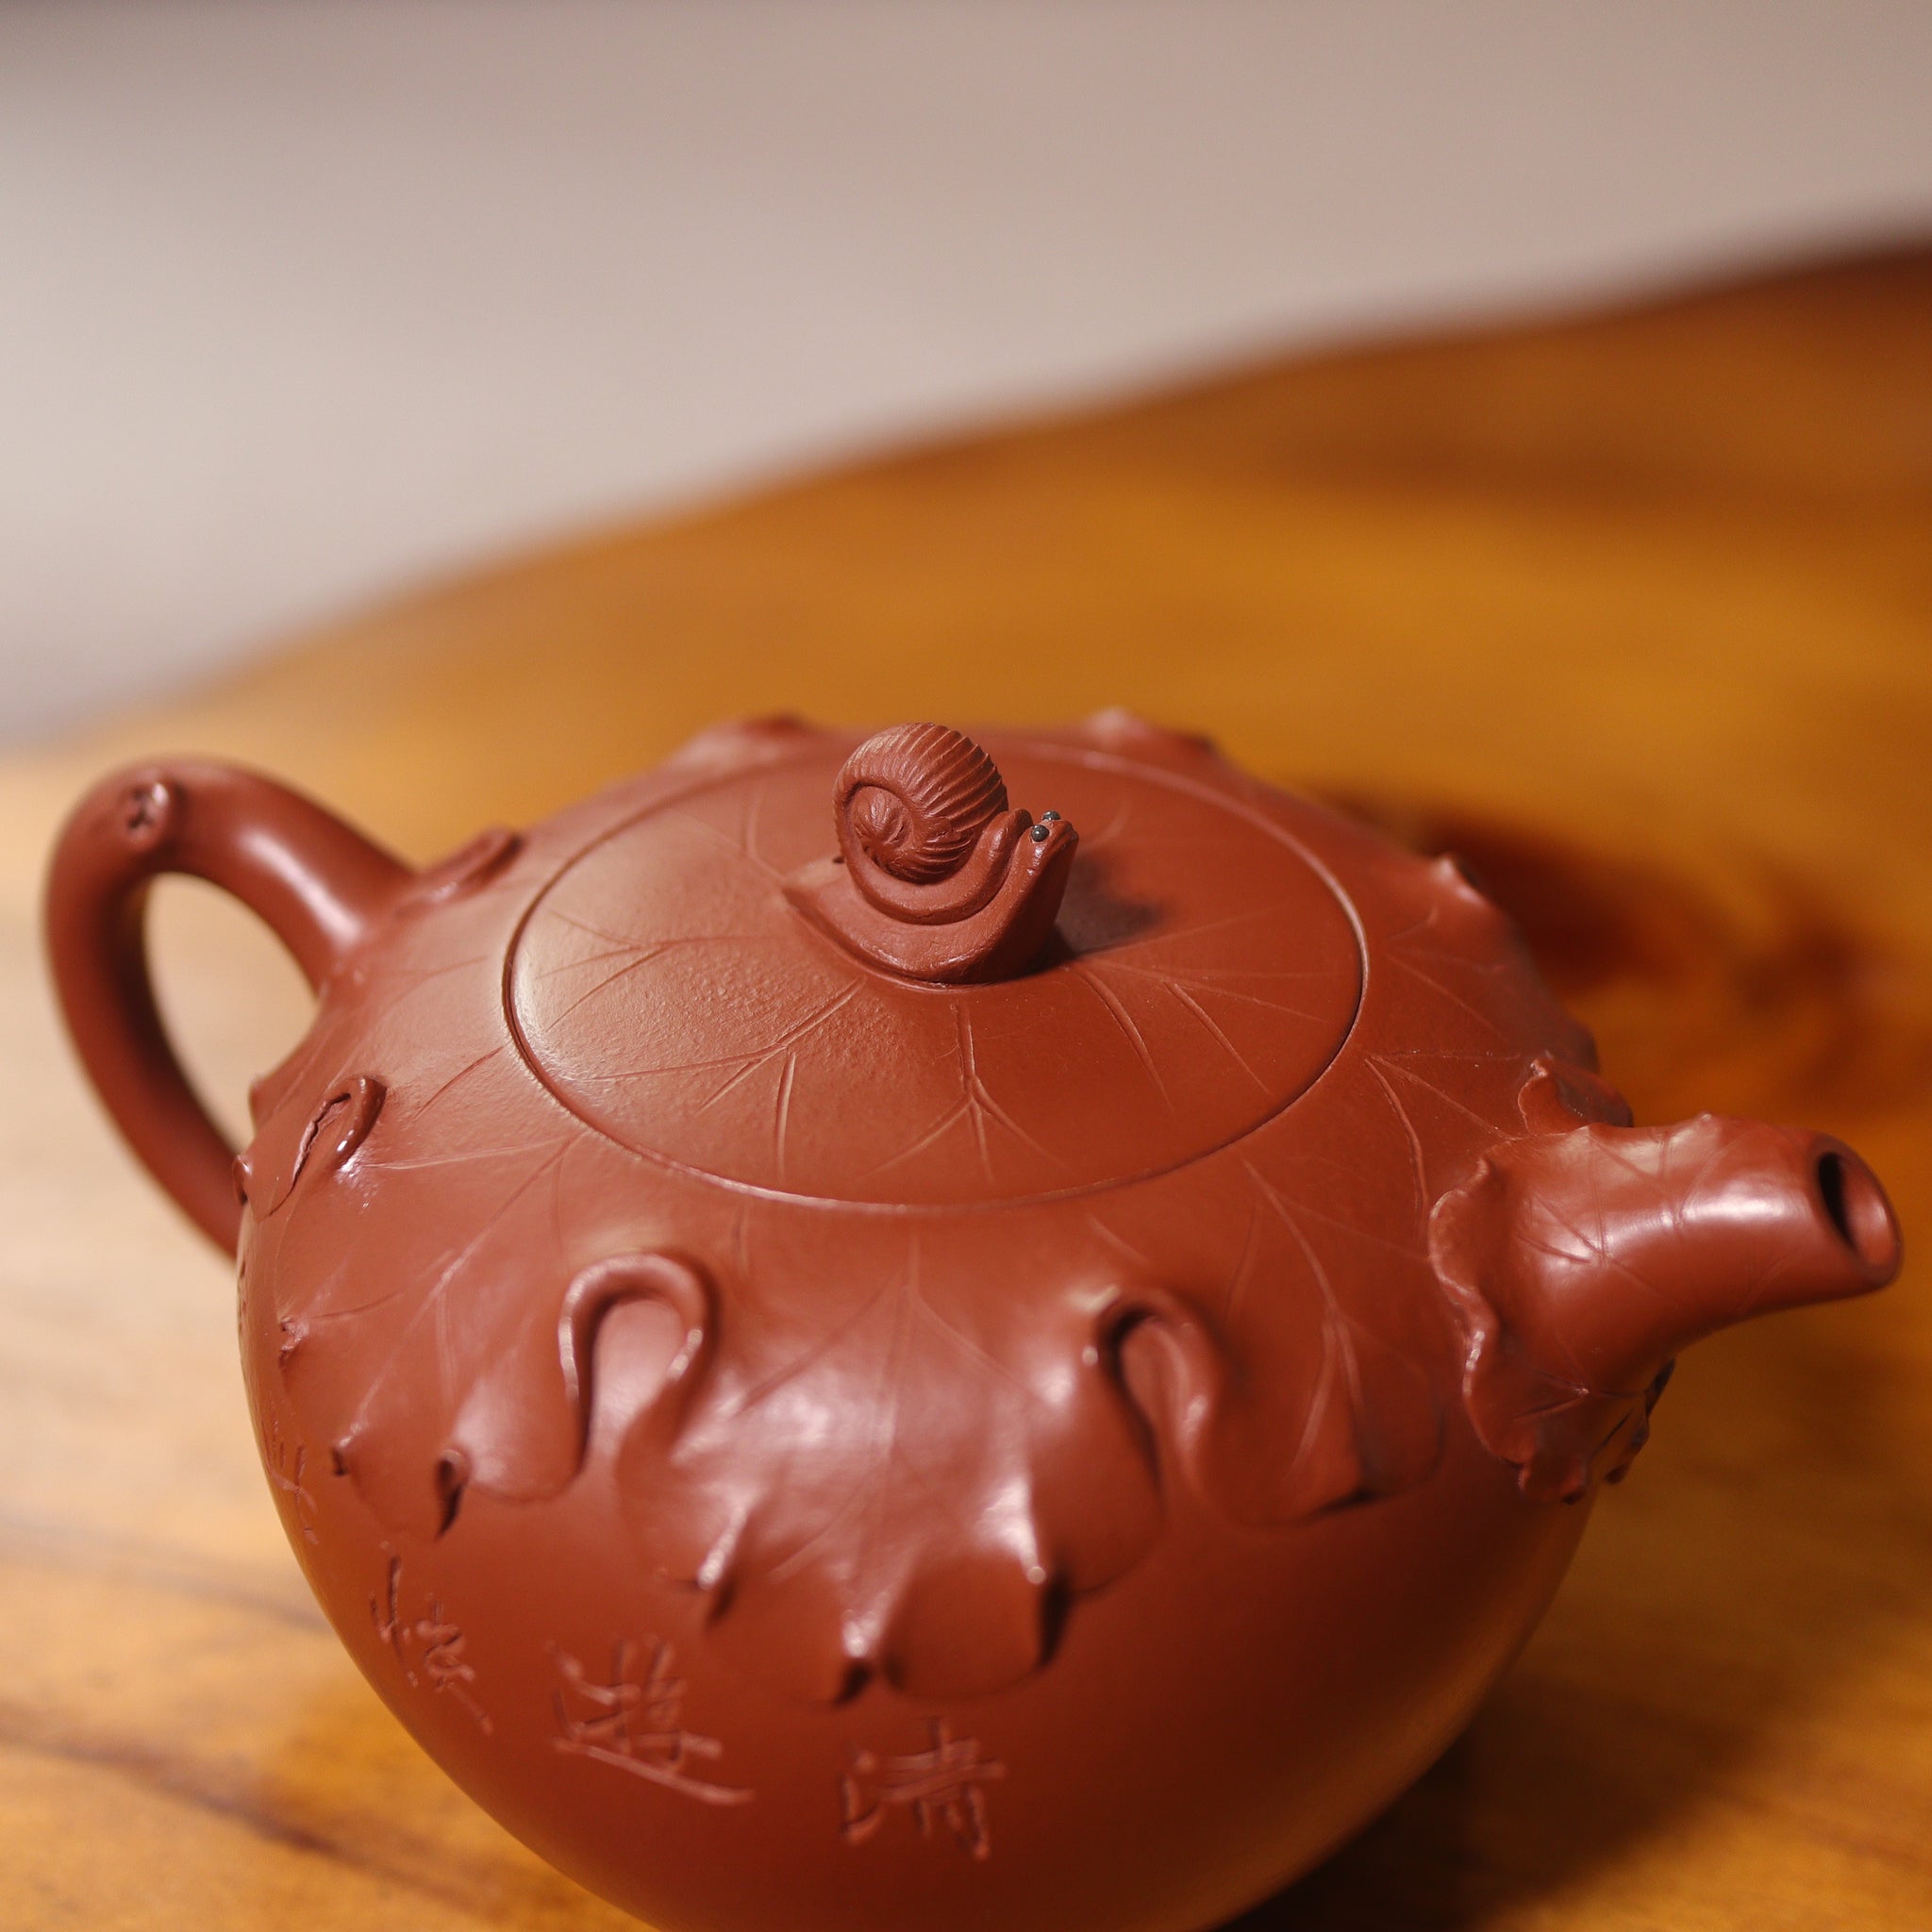 （已售出）*新品*【清蓮】原礦大紅袍貼花雕刻字畫紫砂茶壺